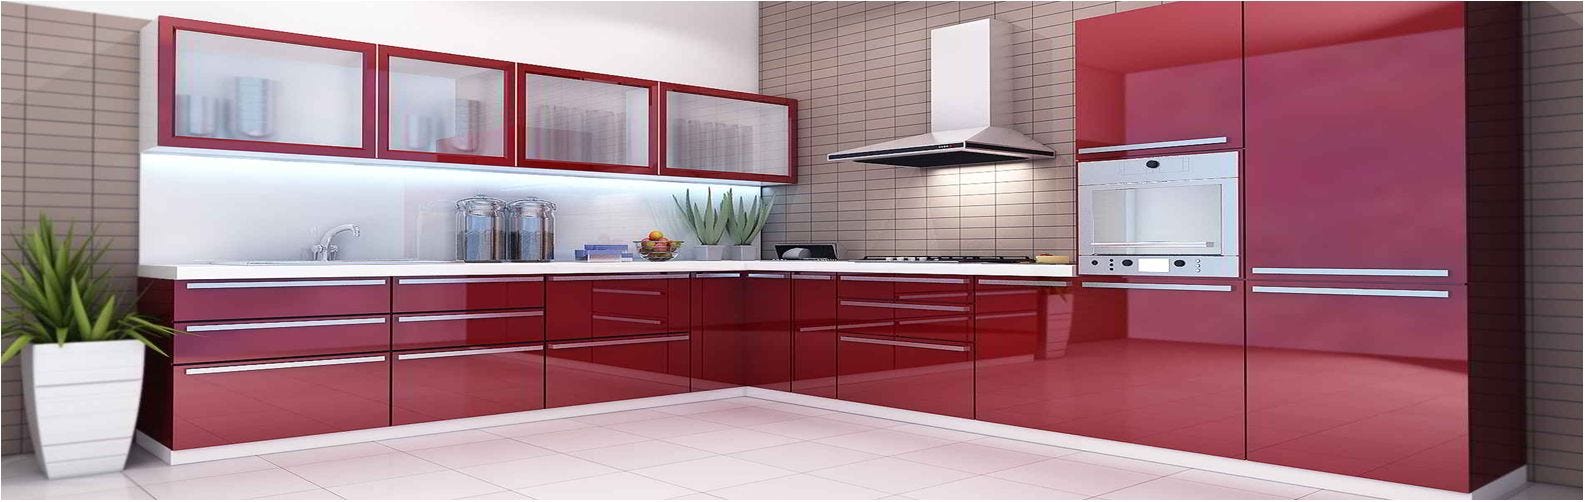 New Model Kitchen Design By Putra Sulung Medium